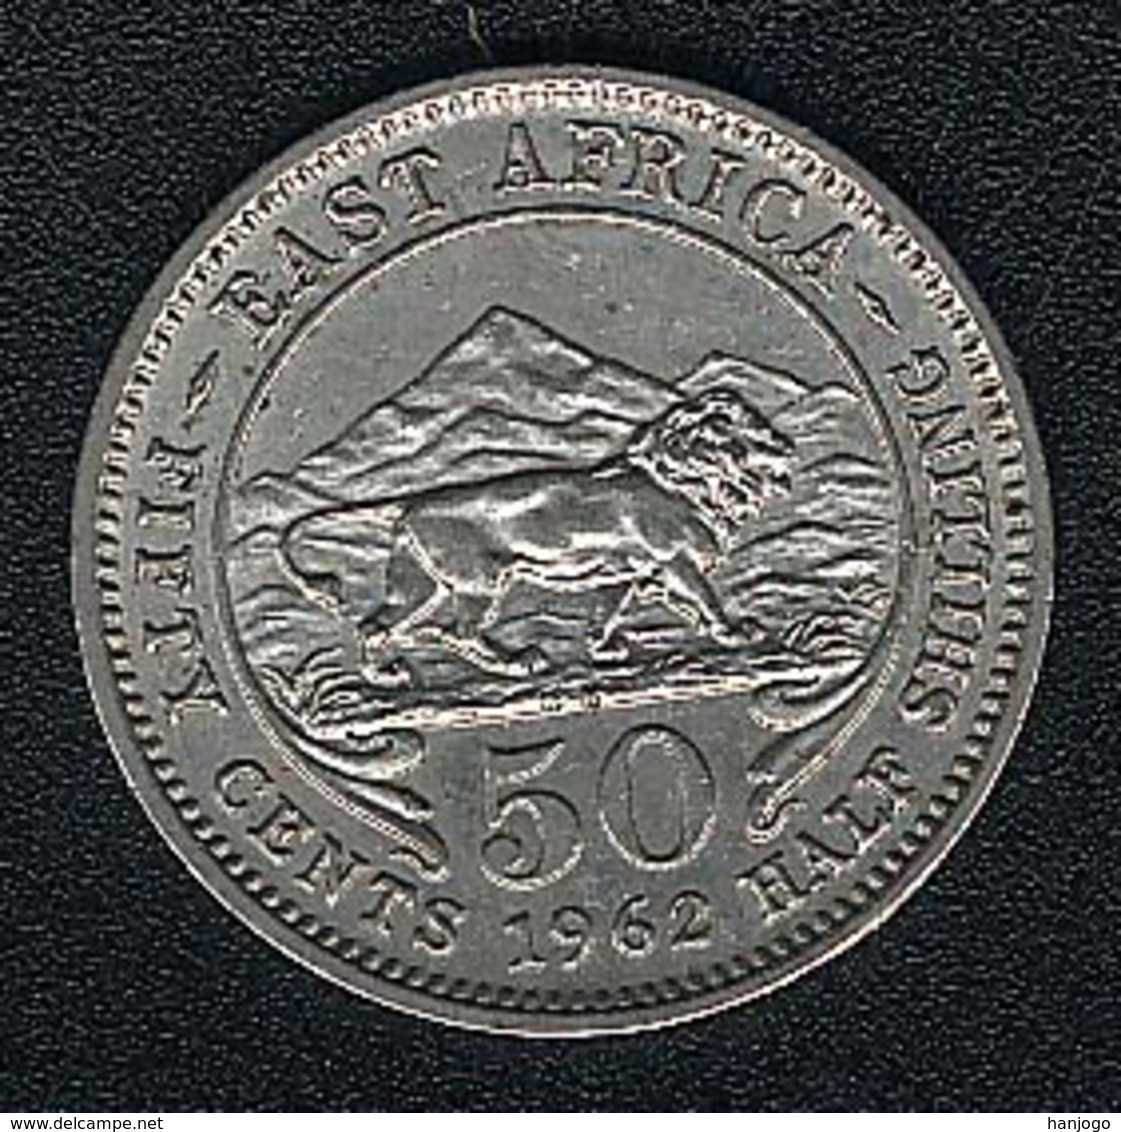 Britisch Ostafrika, 50 Cents 1962 KN, UNC - Britische Kolonie